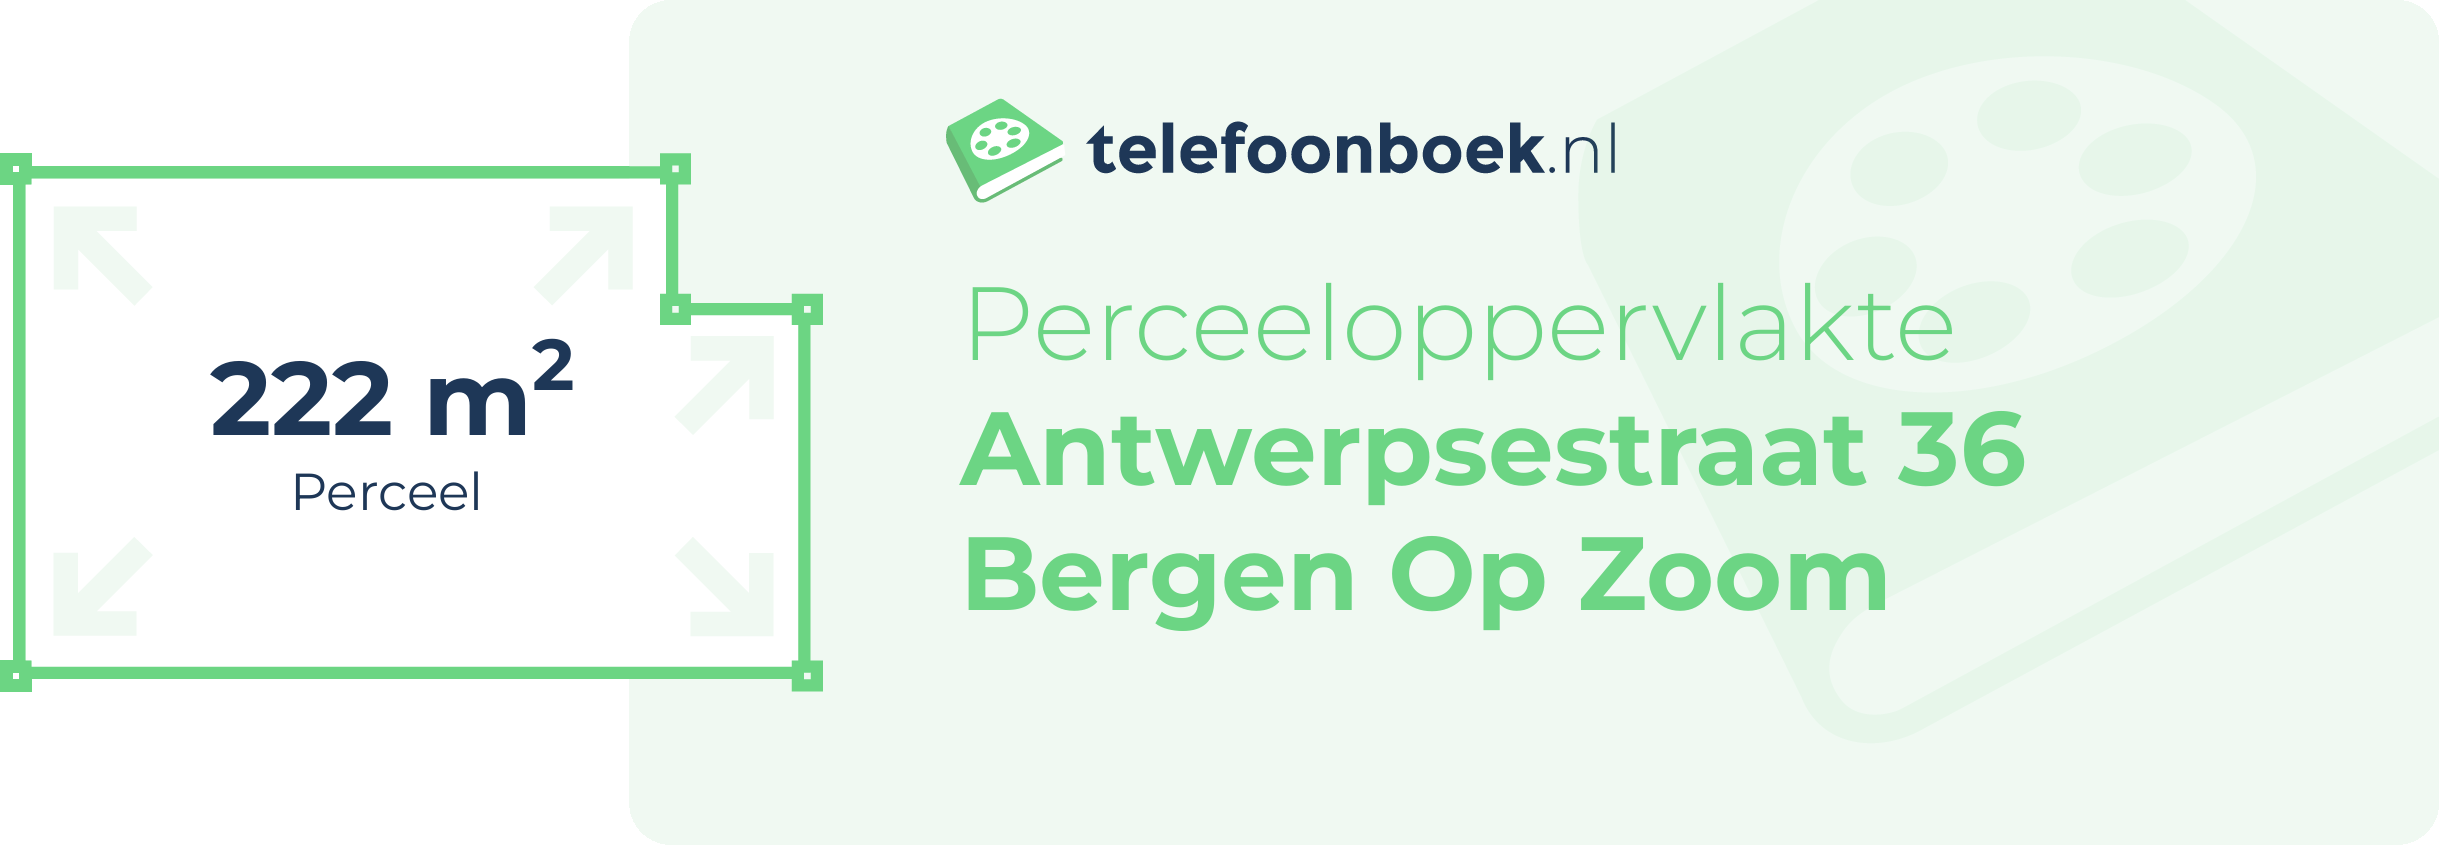 Perceeloppervlakte Antwerpsestraat 36 Bergen Op Zoom